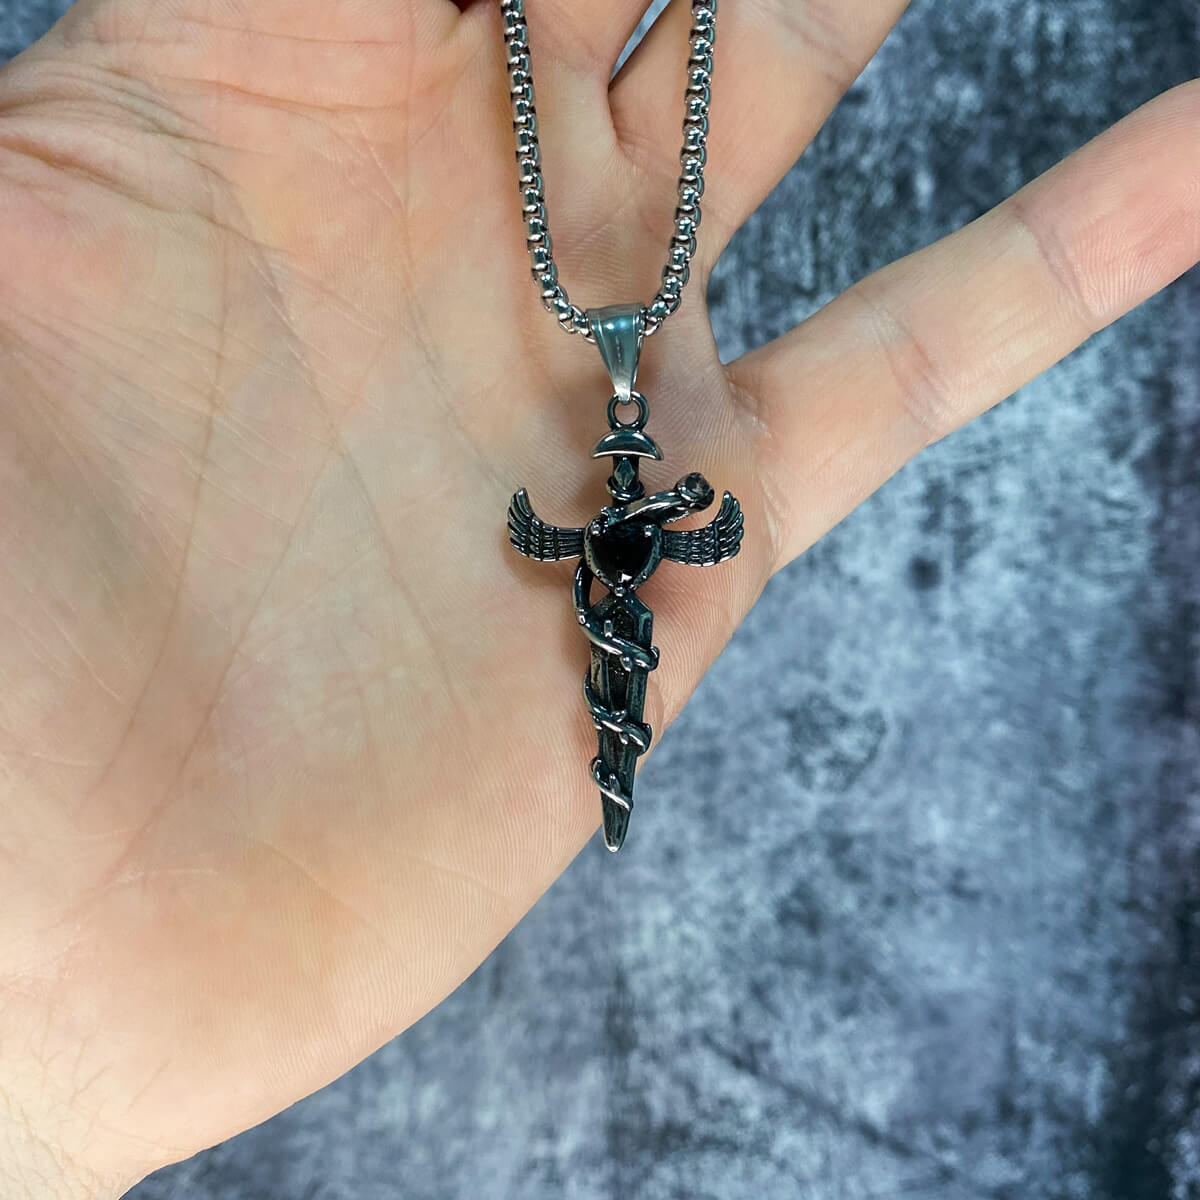 Dagger pendant steel necklace (steel 316L)